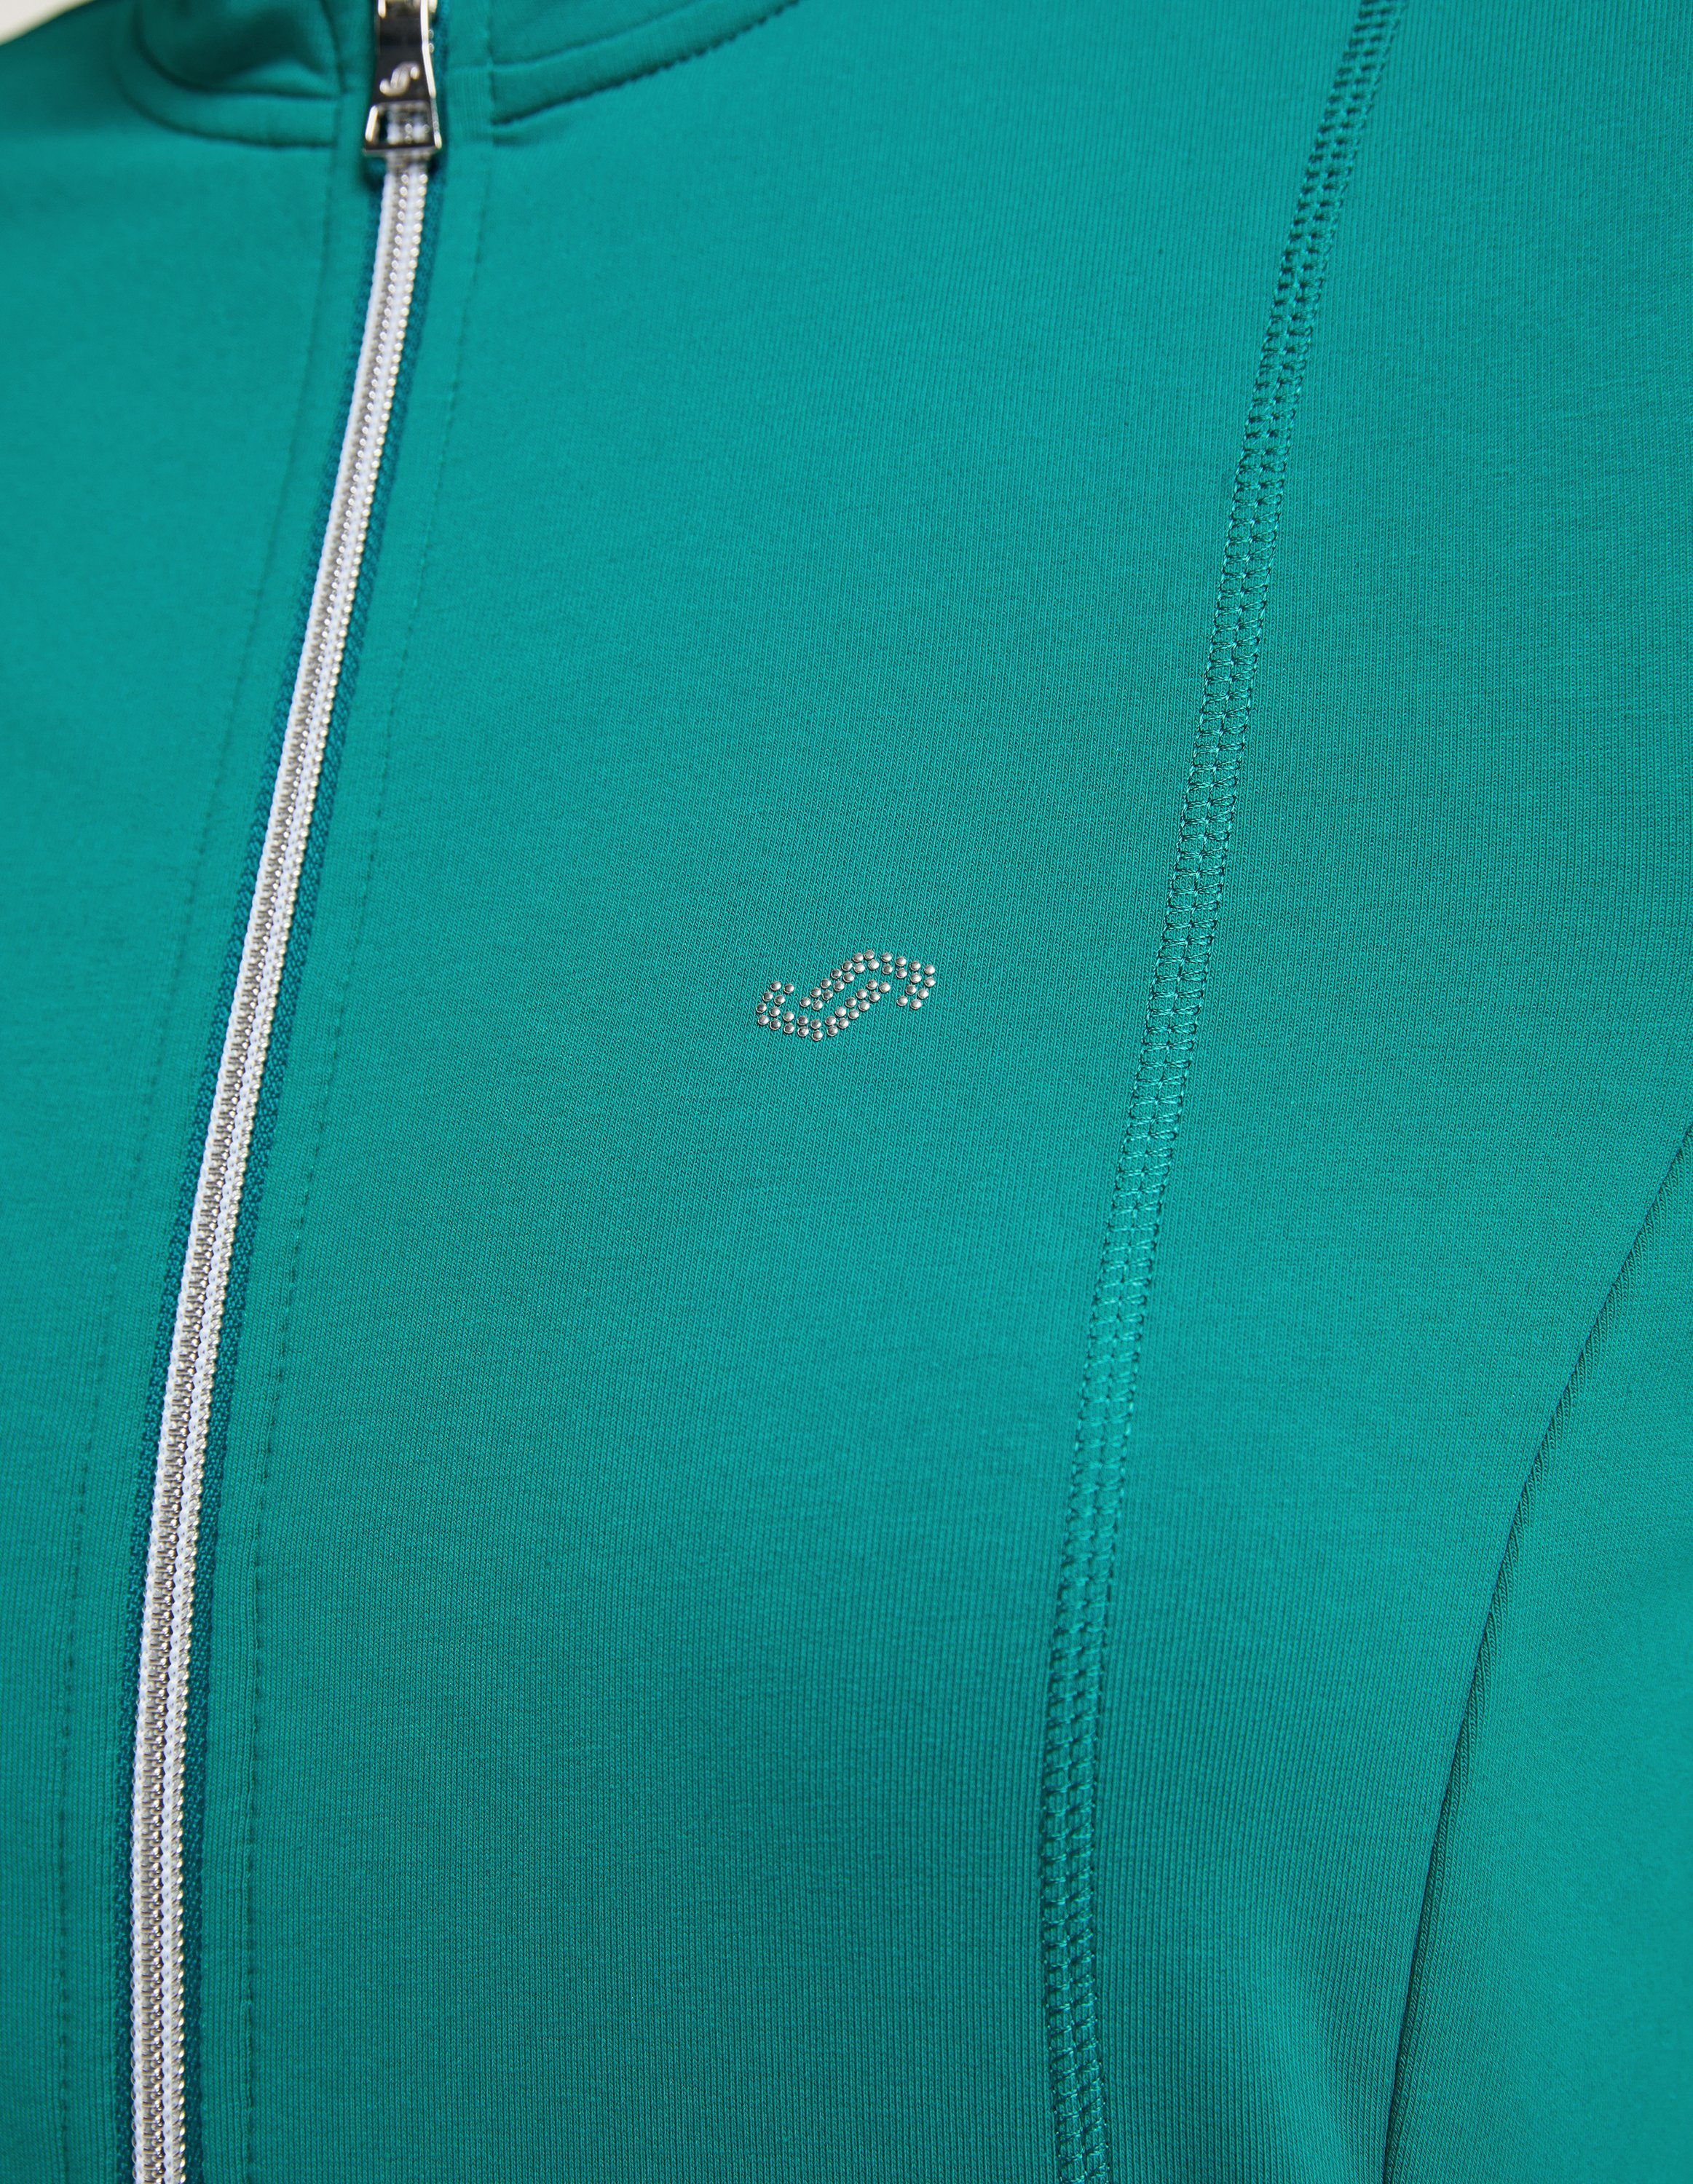 green tropical Trainingsjacke Jacke DORIT Joy Sportswear